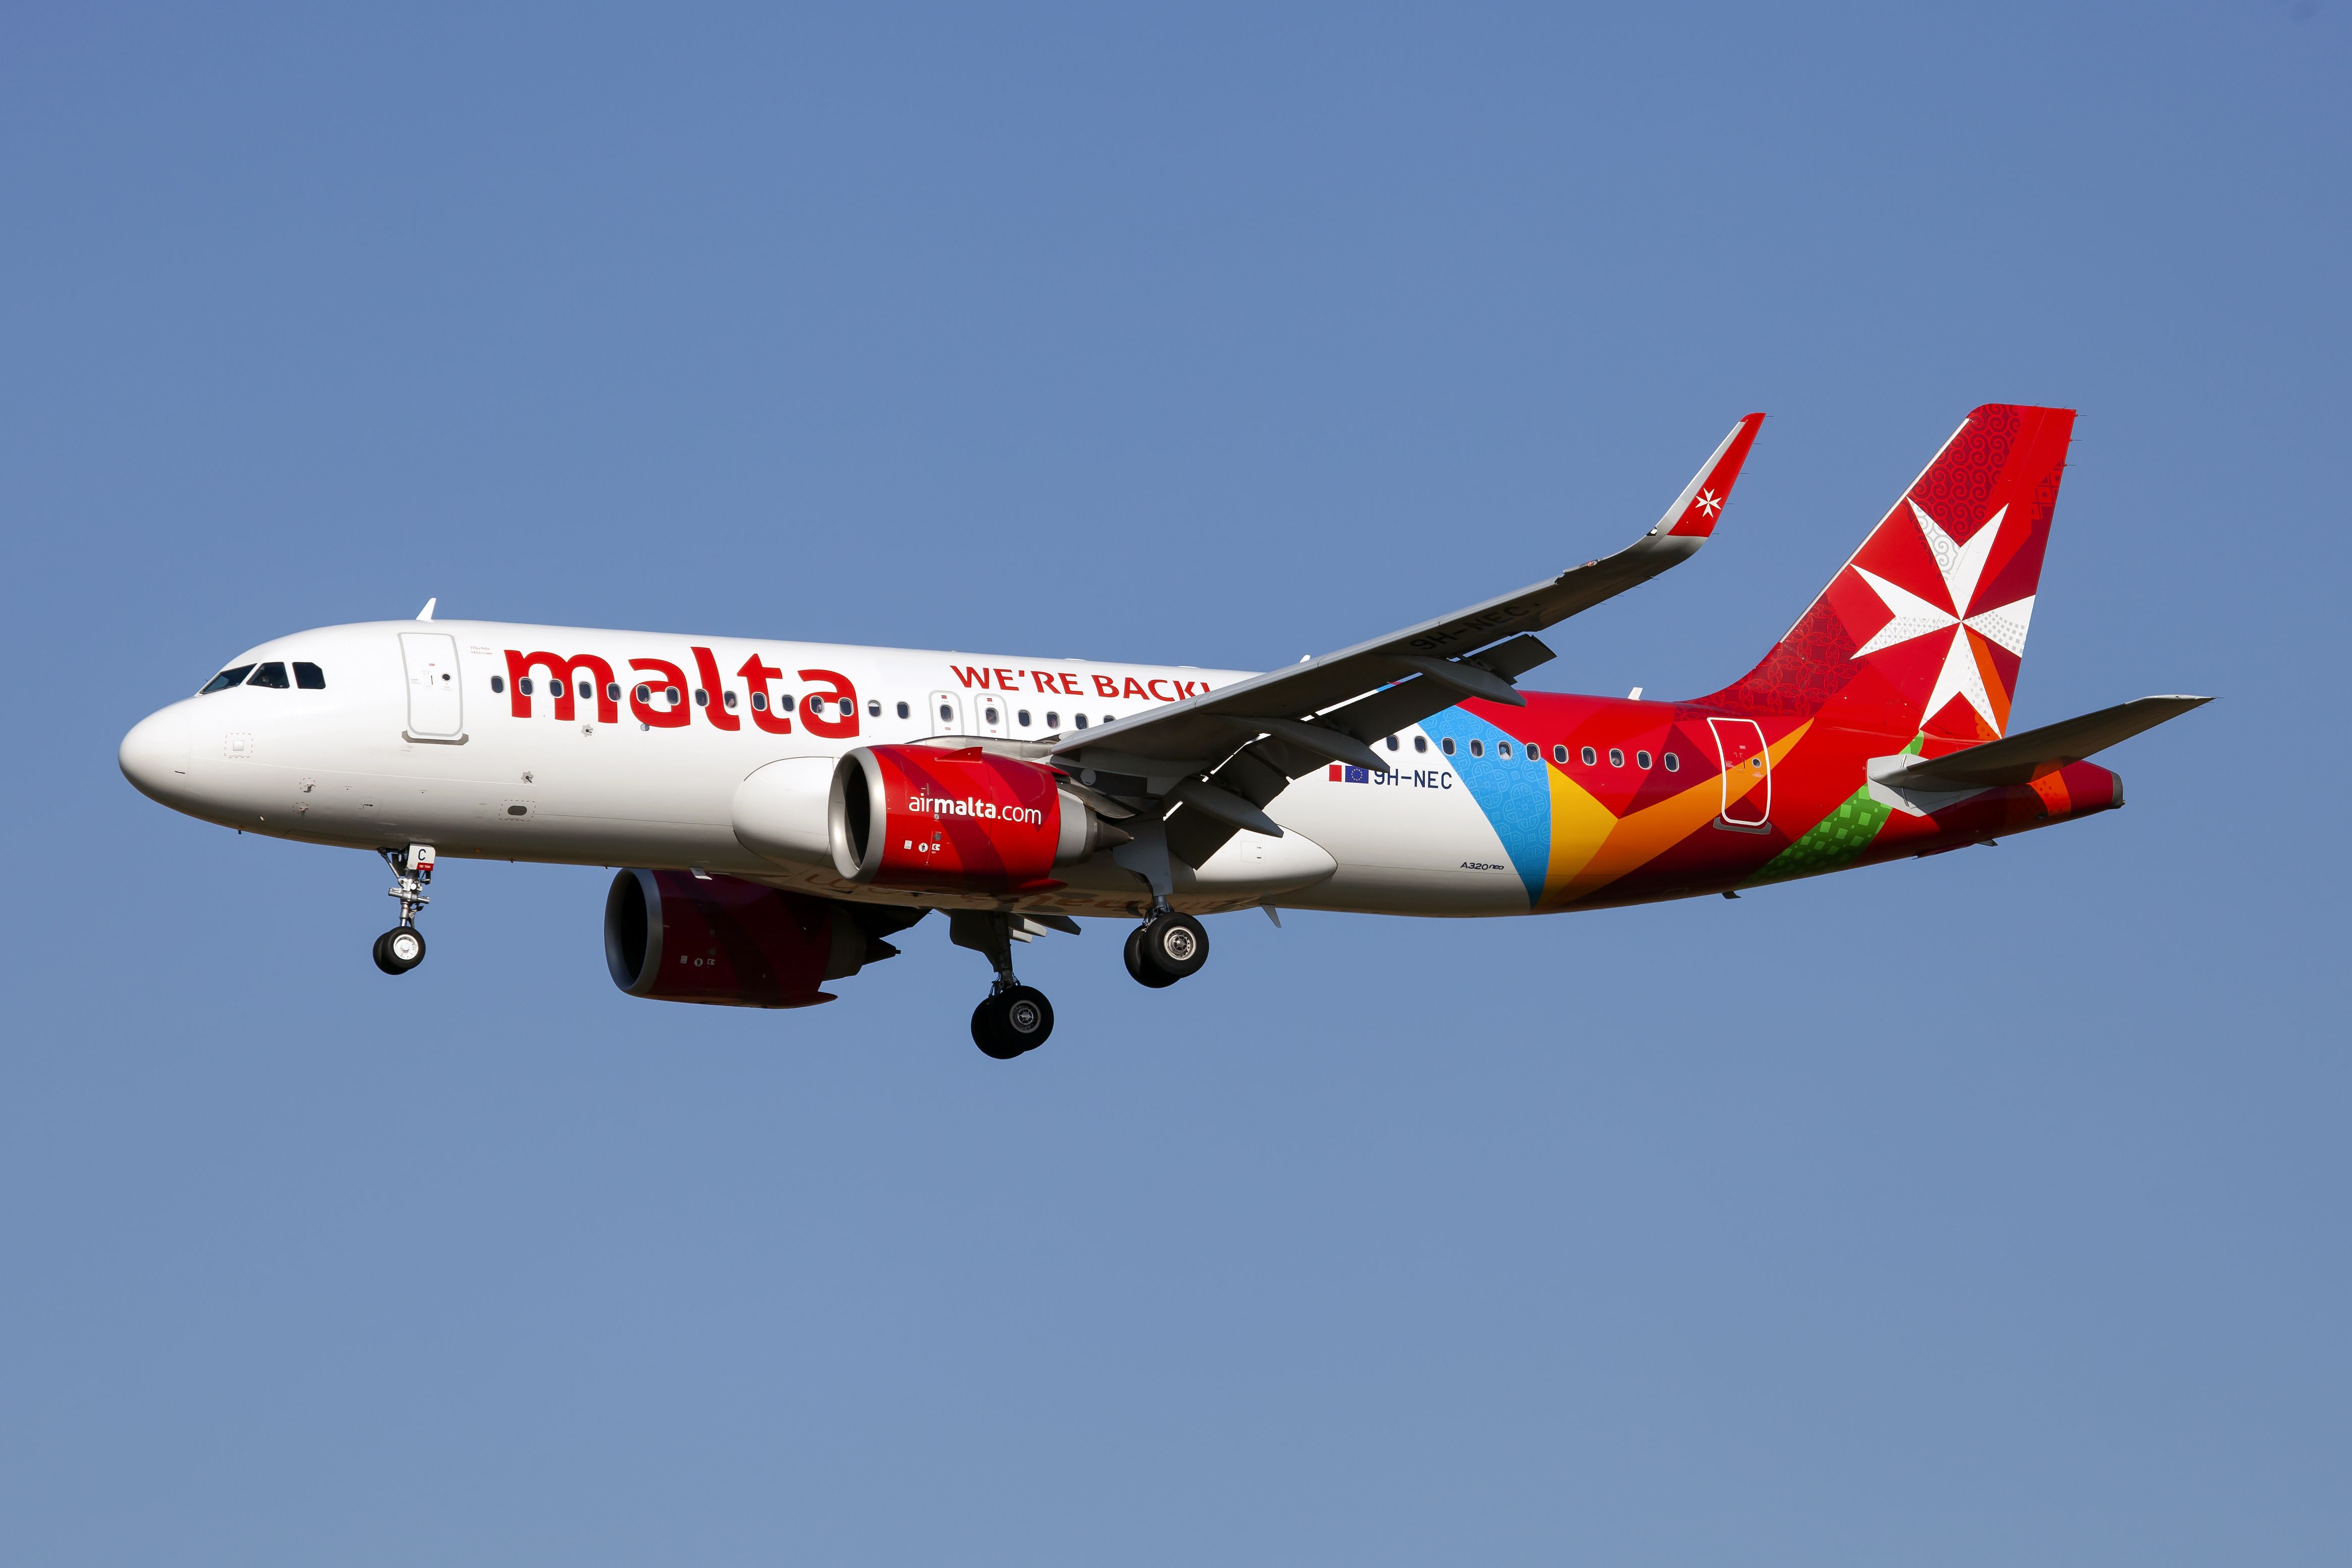 Air Malta A320neo aircraft against blue sky